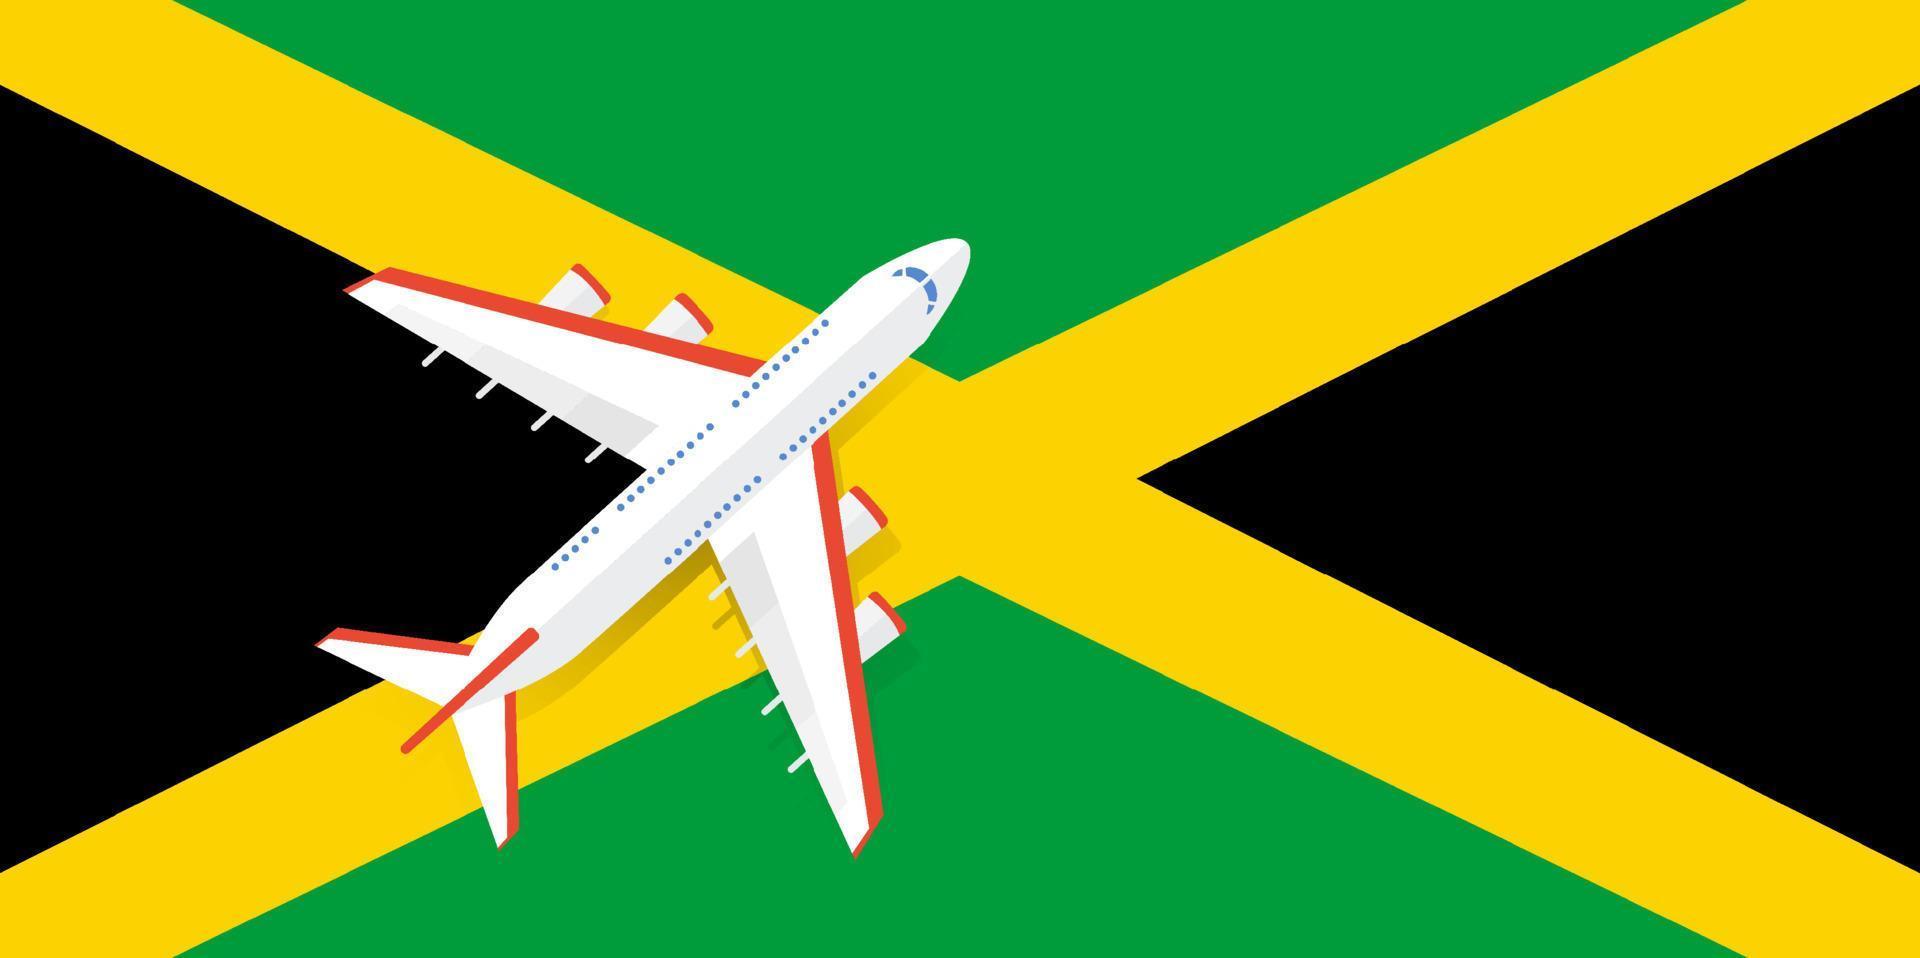 illustrazione vettoriale di un aereo passeggeri che sorvola la bandiera della giamaica. concetto di turismo e viaggi